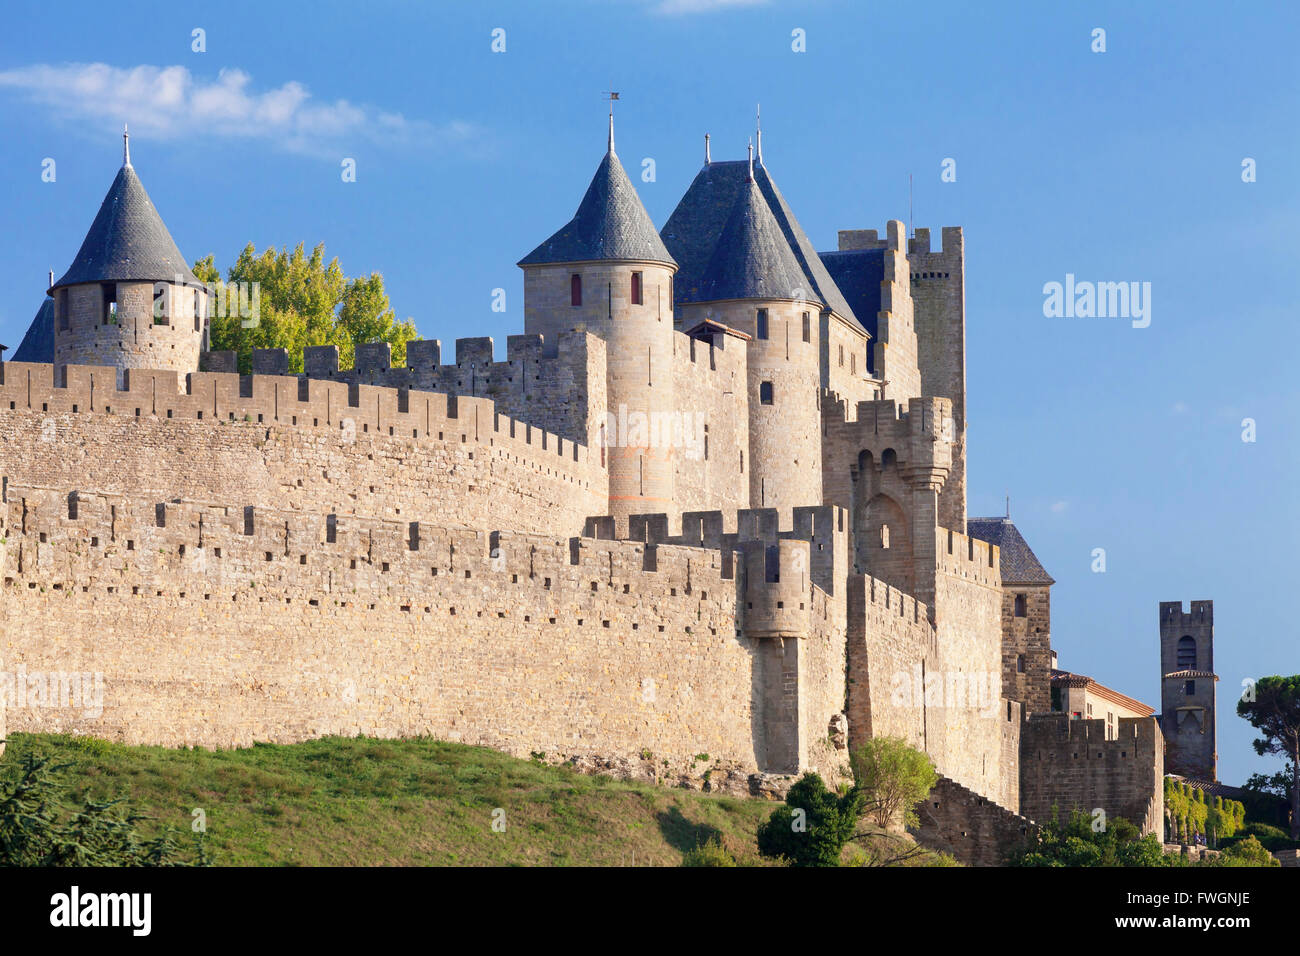 La Cite, mittelalterliche Festungsstadt Carcassonne, UNESCO-Weltkulturerbe, Languedoc-Roussillon, Frankreich, Europa Stockfoto